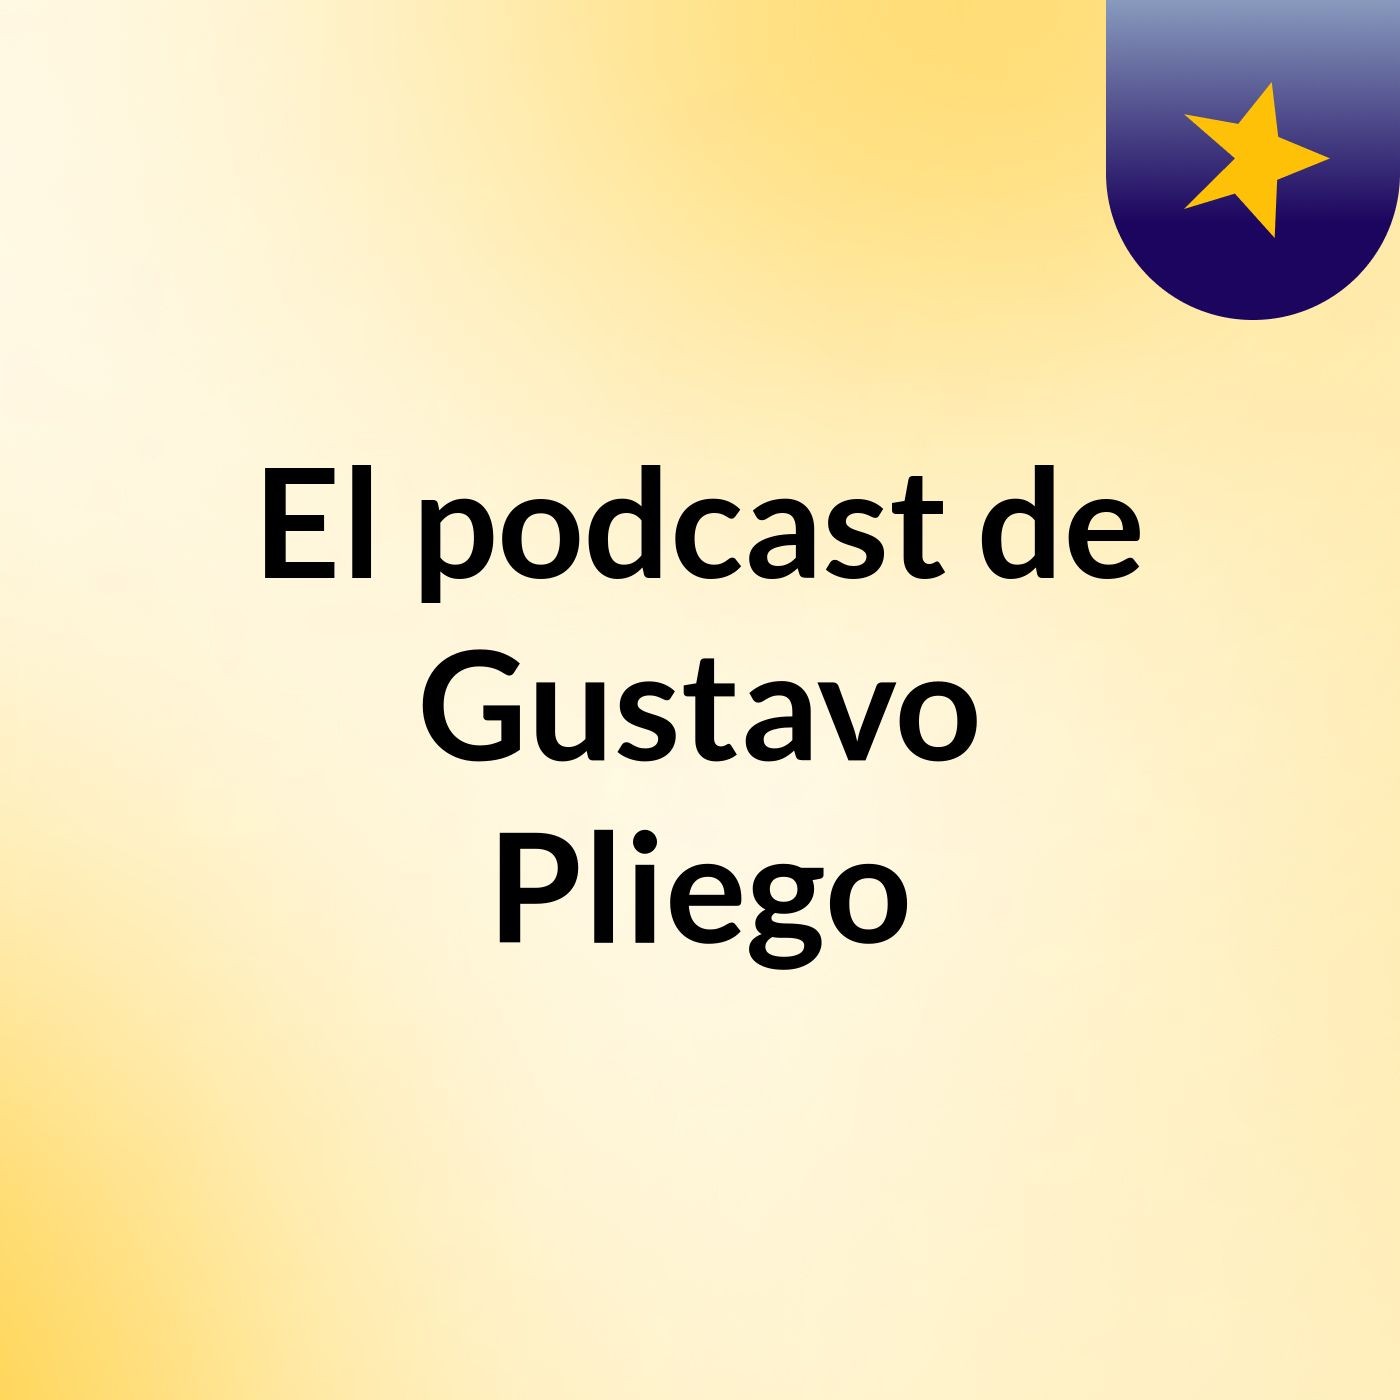 El podcast de Gustavo Pliego